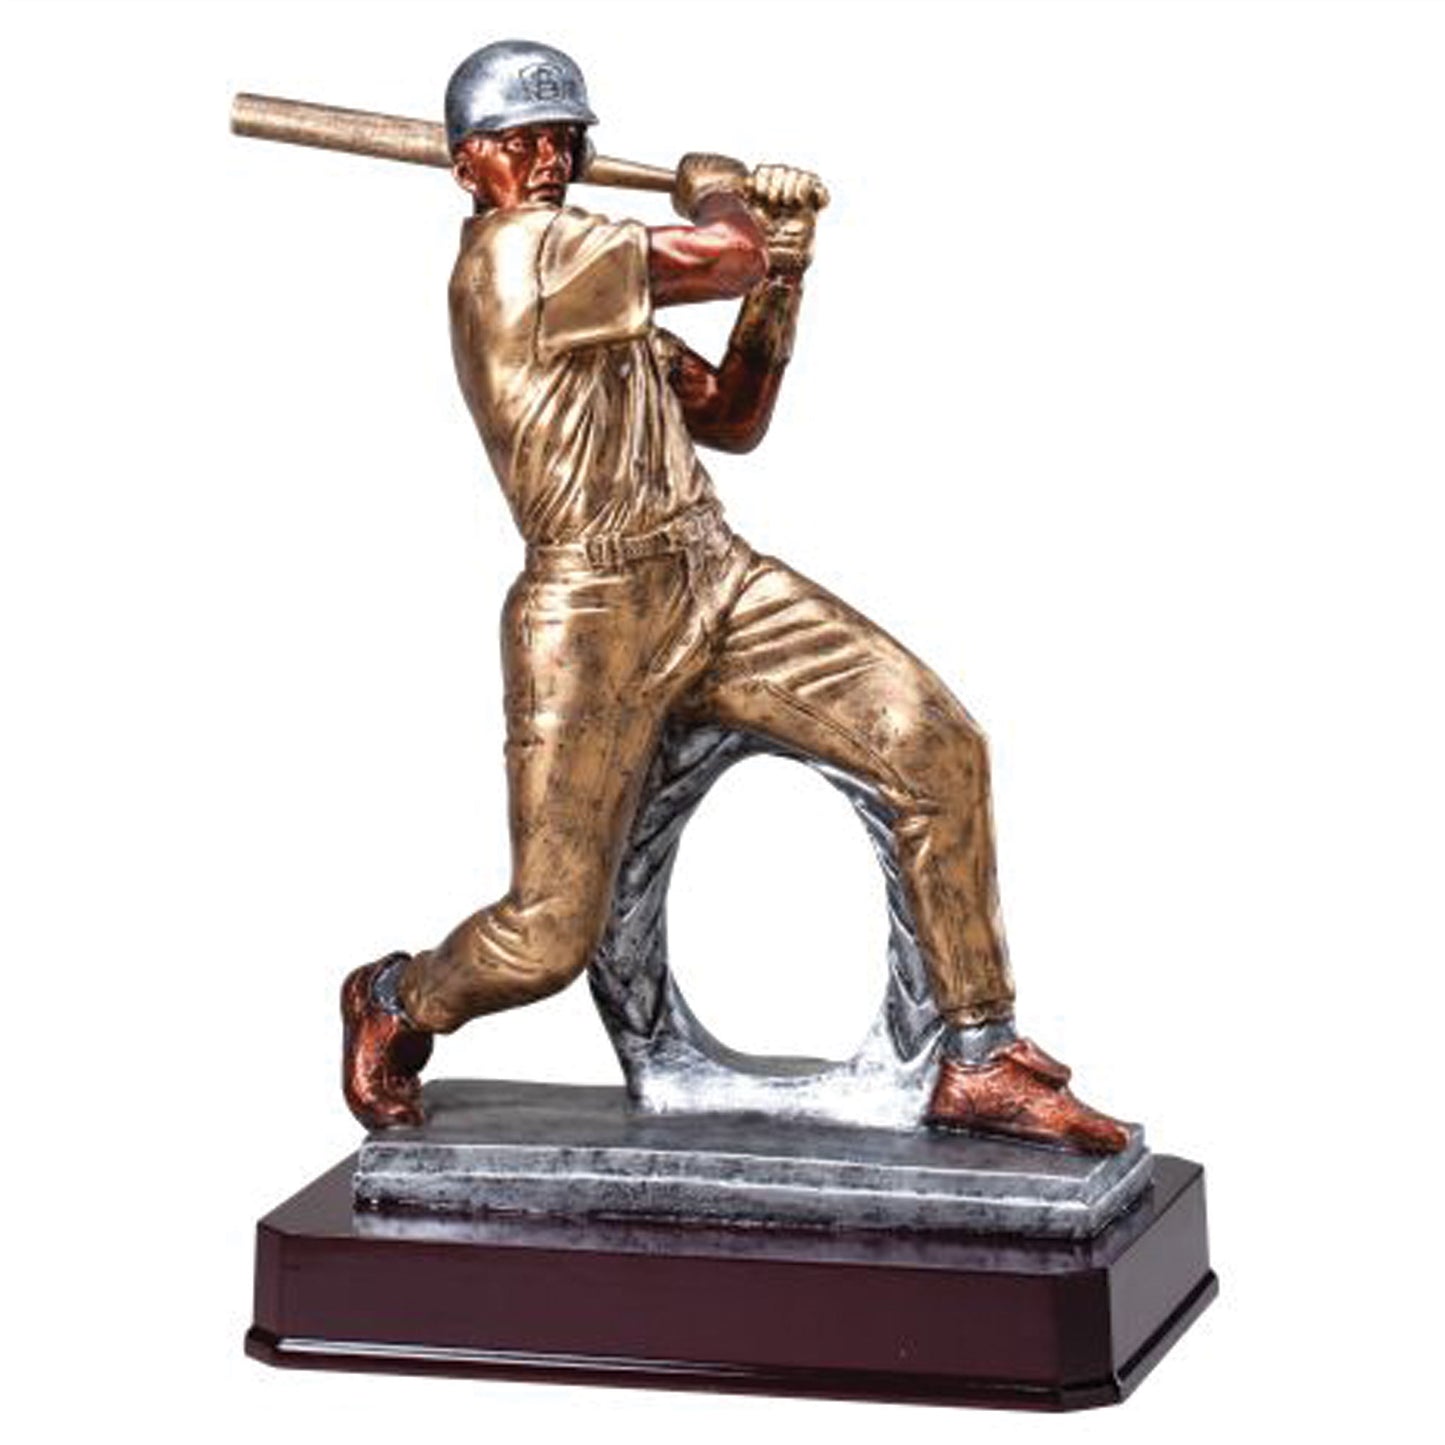 Baseball Galley Resin Sculpture - Batter - 14 1/2"